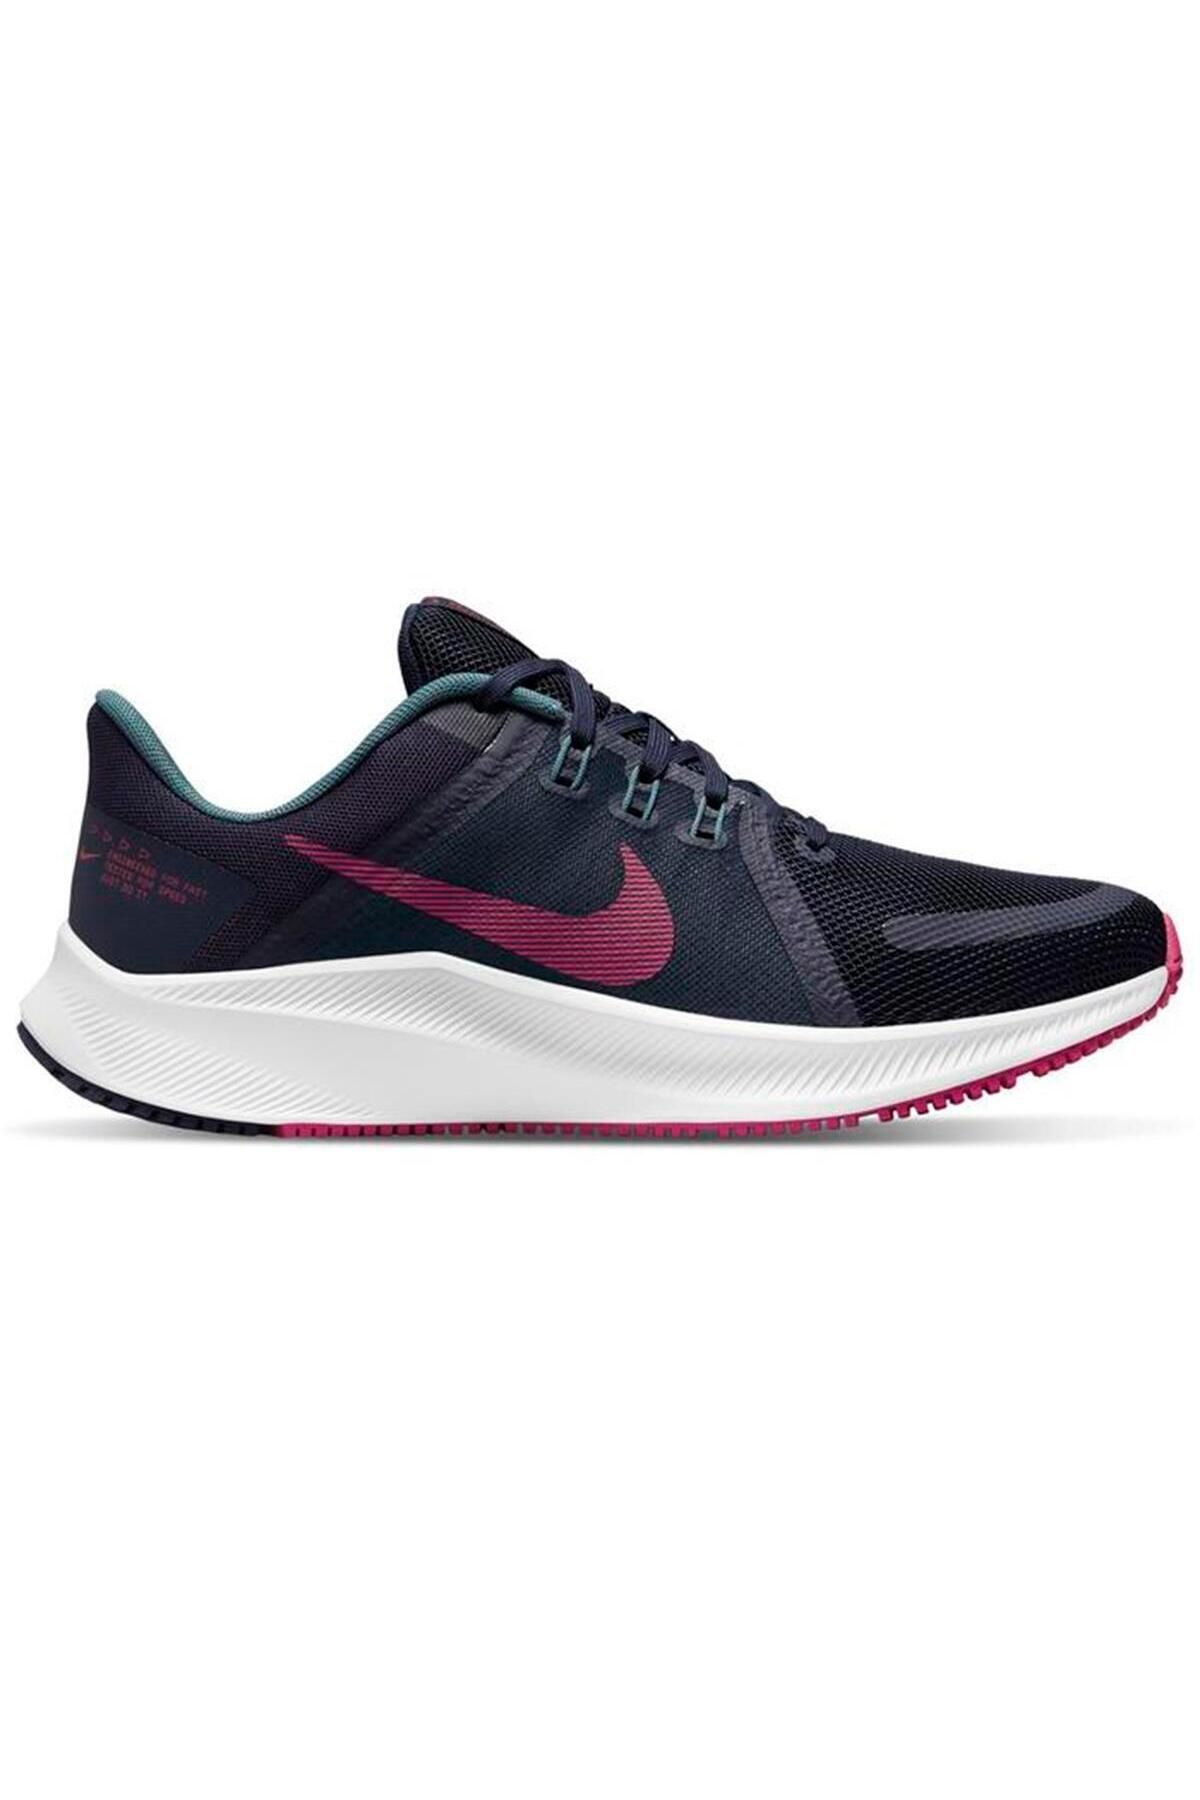 Nike Wmns Quest 4 Kadın Mavi Koşu Ayakkabısı Da1106-401